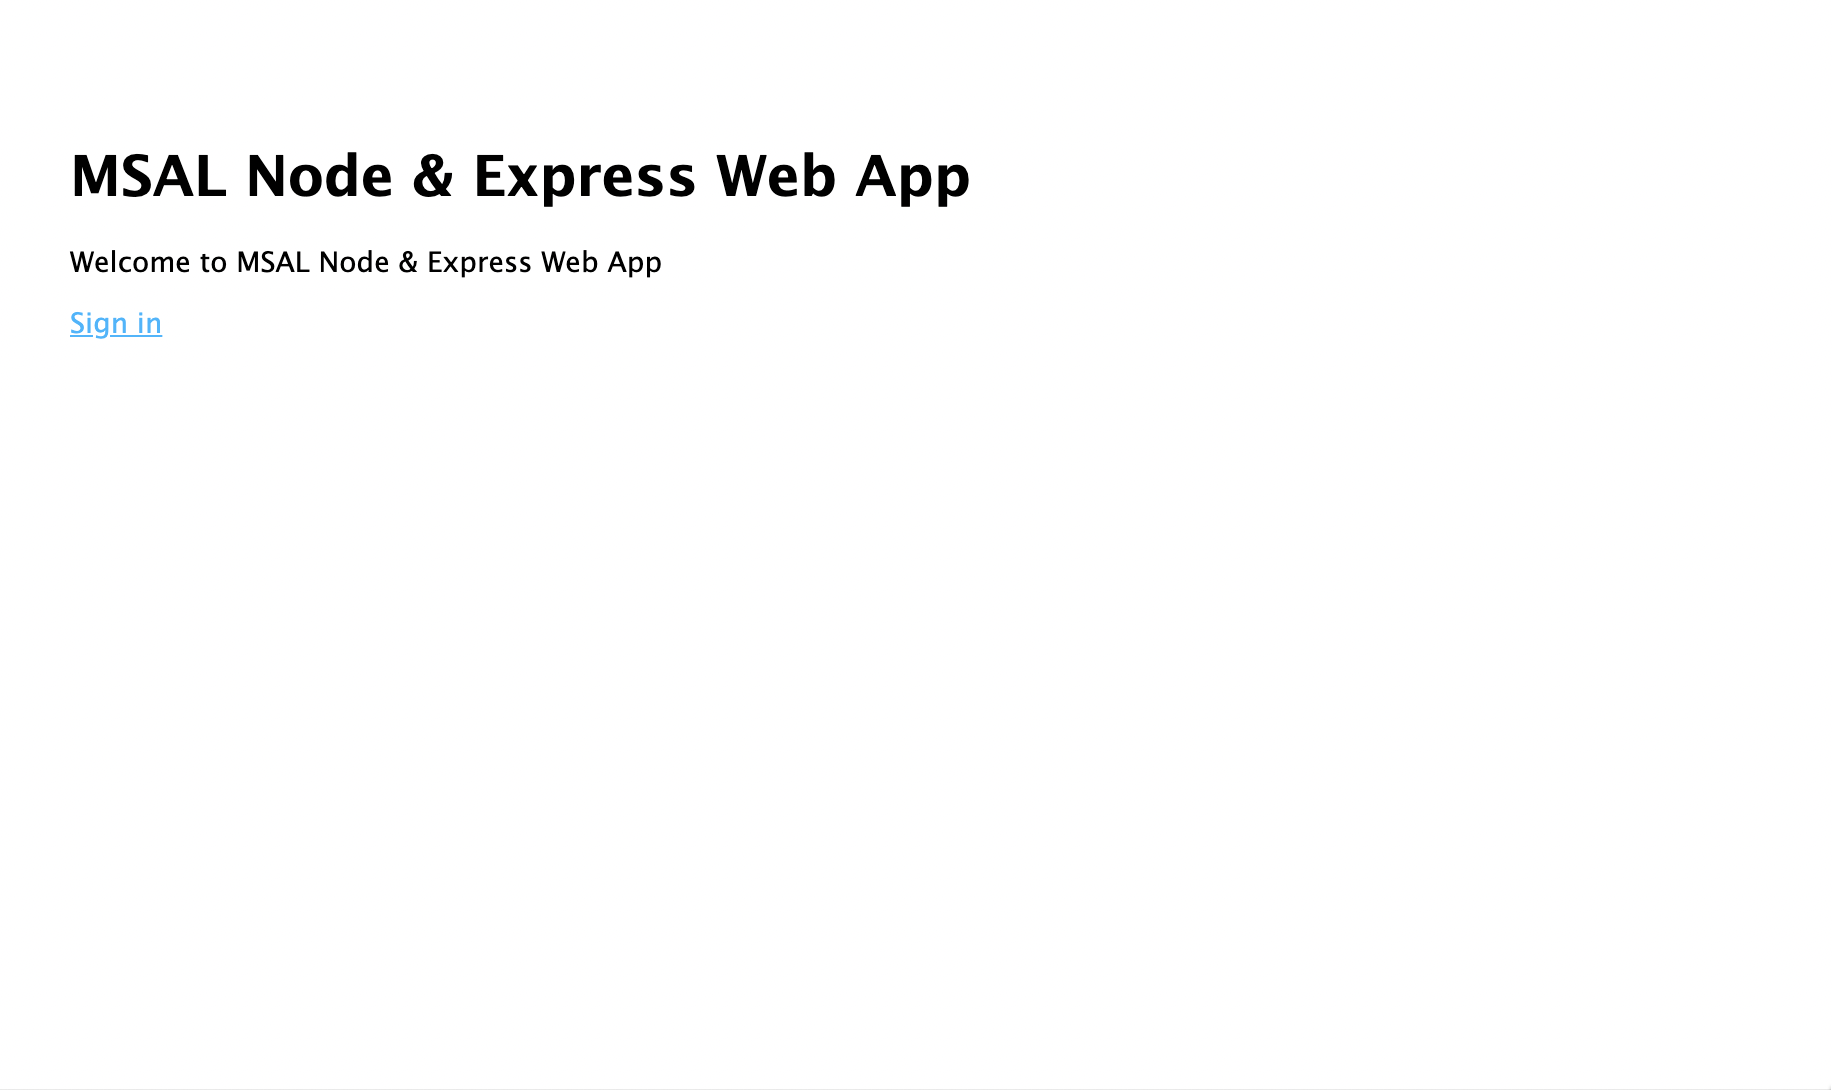 Visualizzazione della pagina iniziale dell'app Web